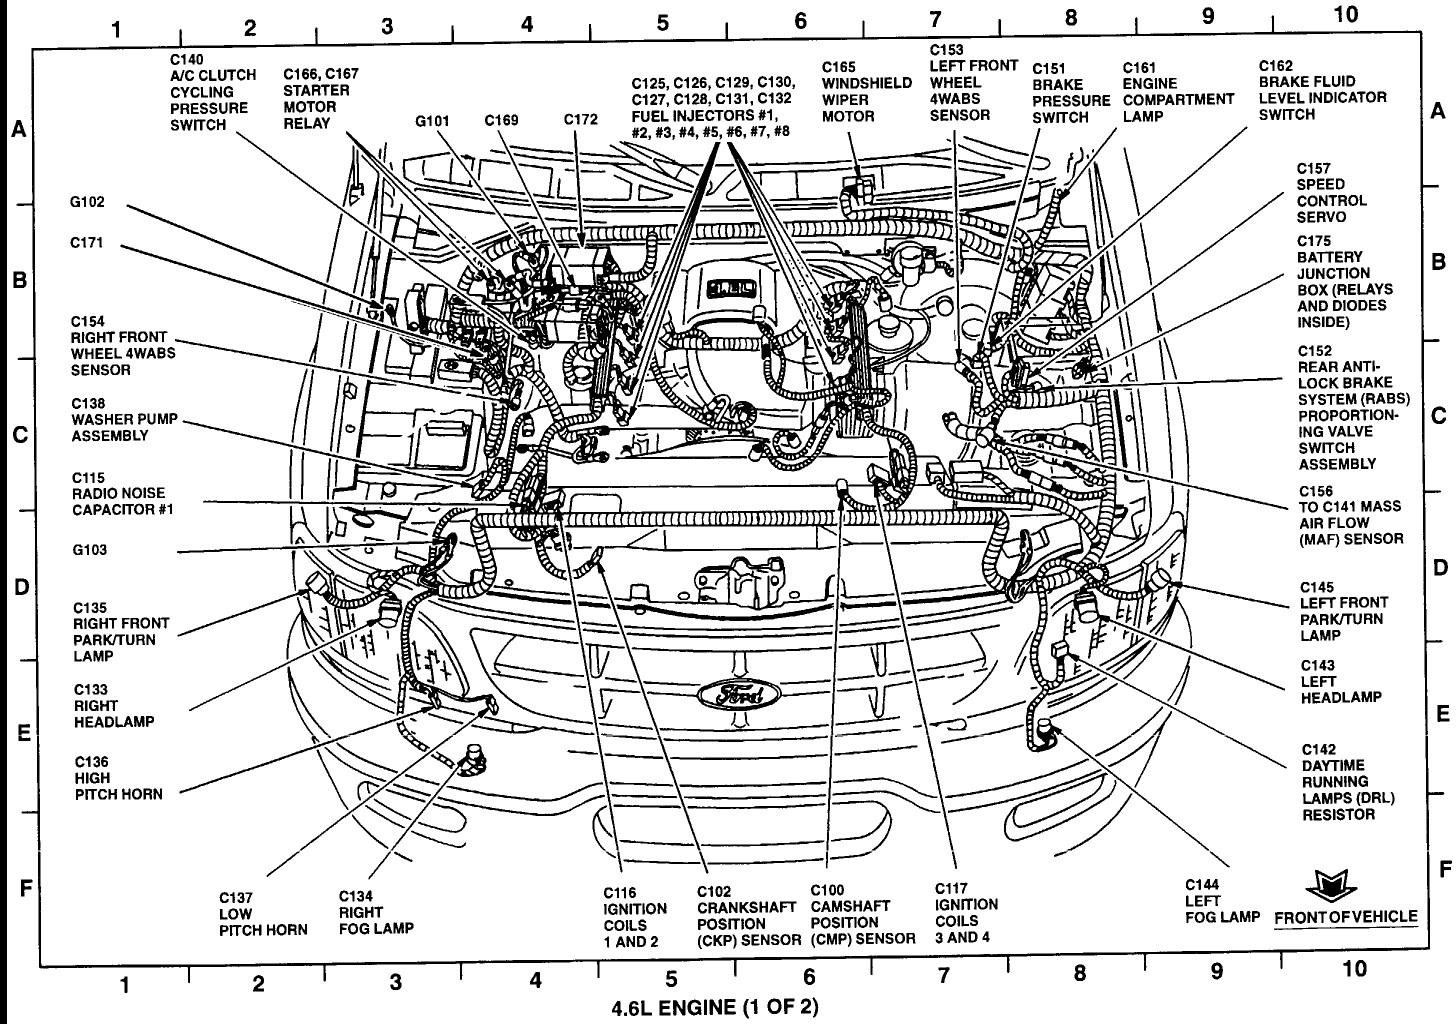 2000 ford F150 Engine Diagram ford F 150 4 6 Engine Diagram 2000 Wiring Diagram Of 2000 ford F150 Engine Diagram